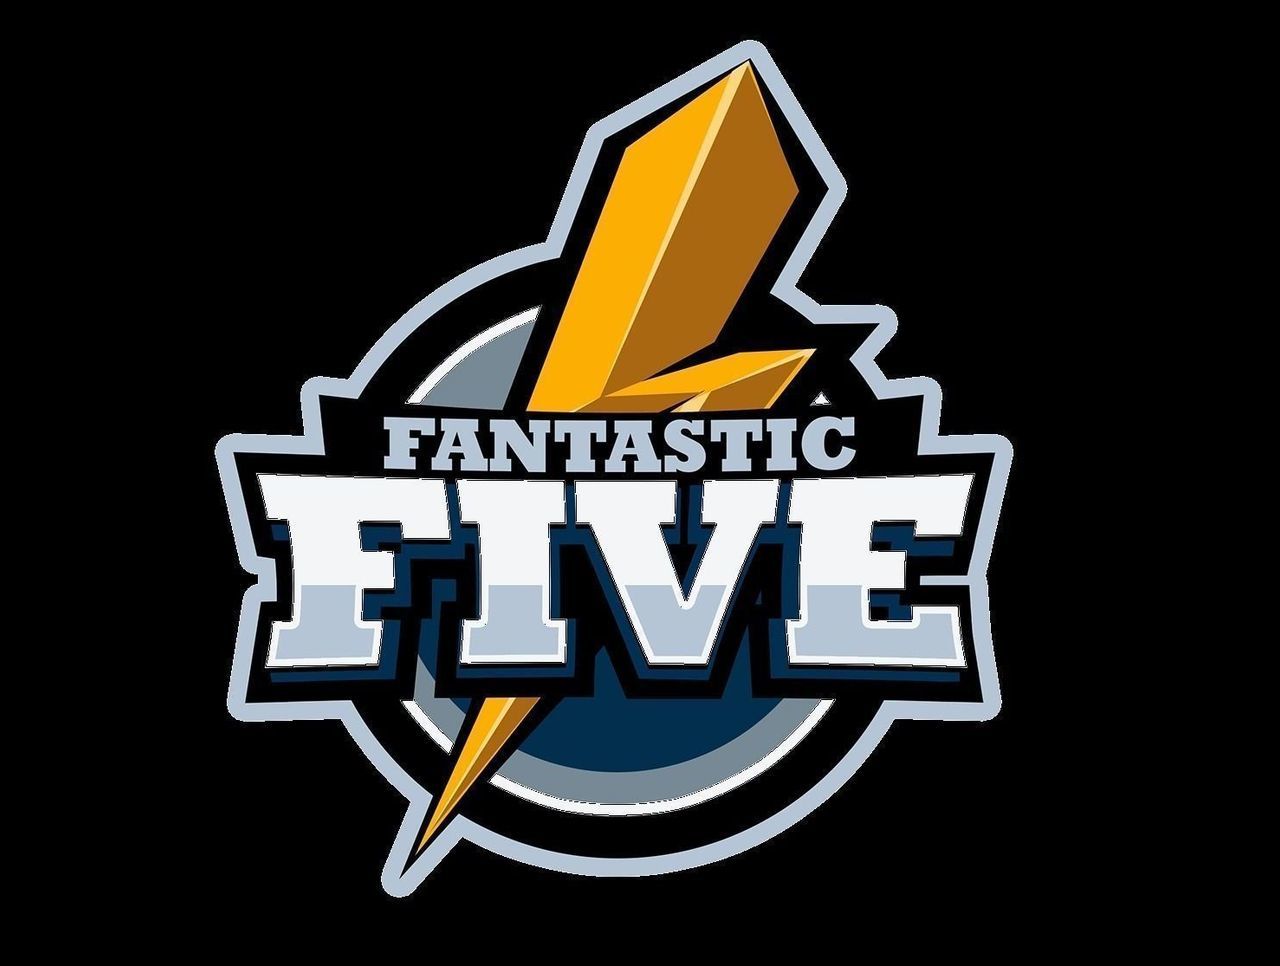 Менеджера состава Fantastic Five по Dota 2 просили уговорить игроков сыграть 322